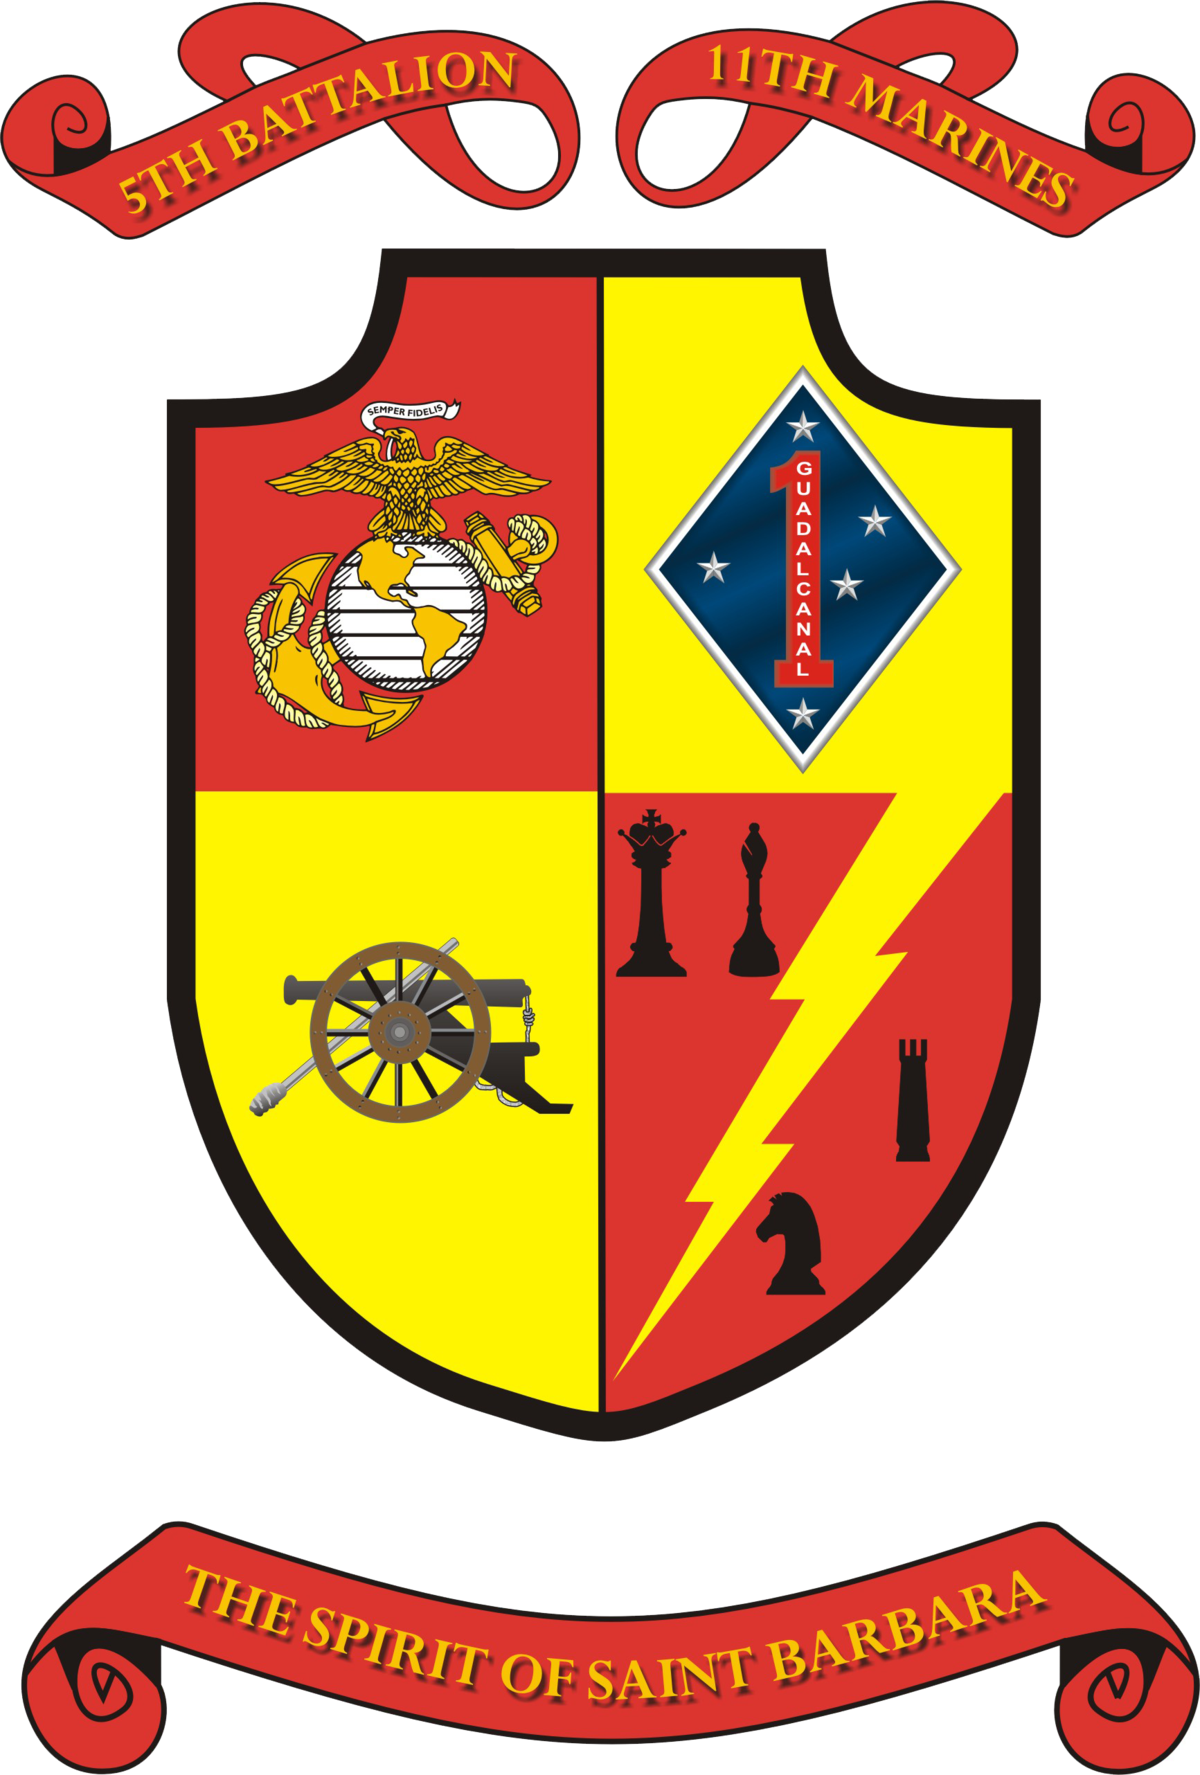 5th Battalion 11th Marines - 5th Battalion 11th Marines (1200x1775)